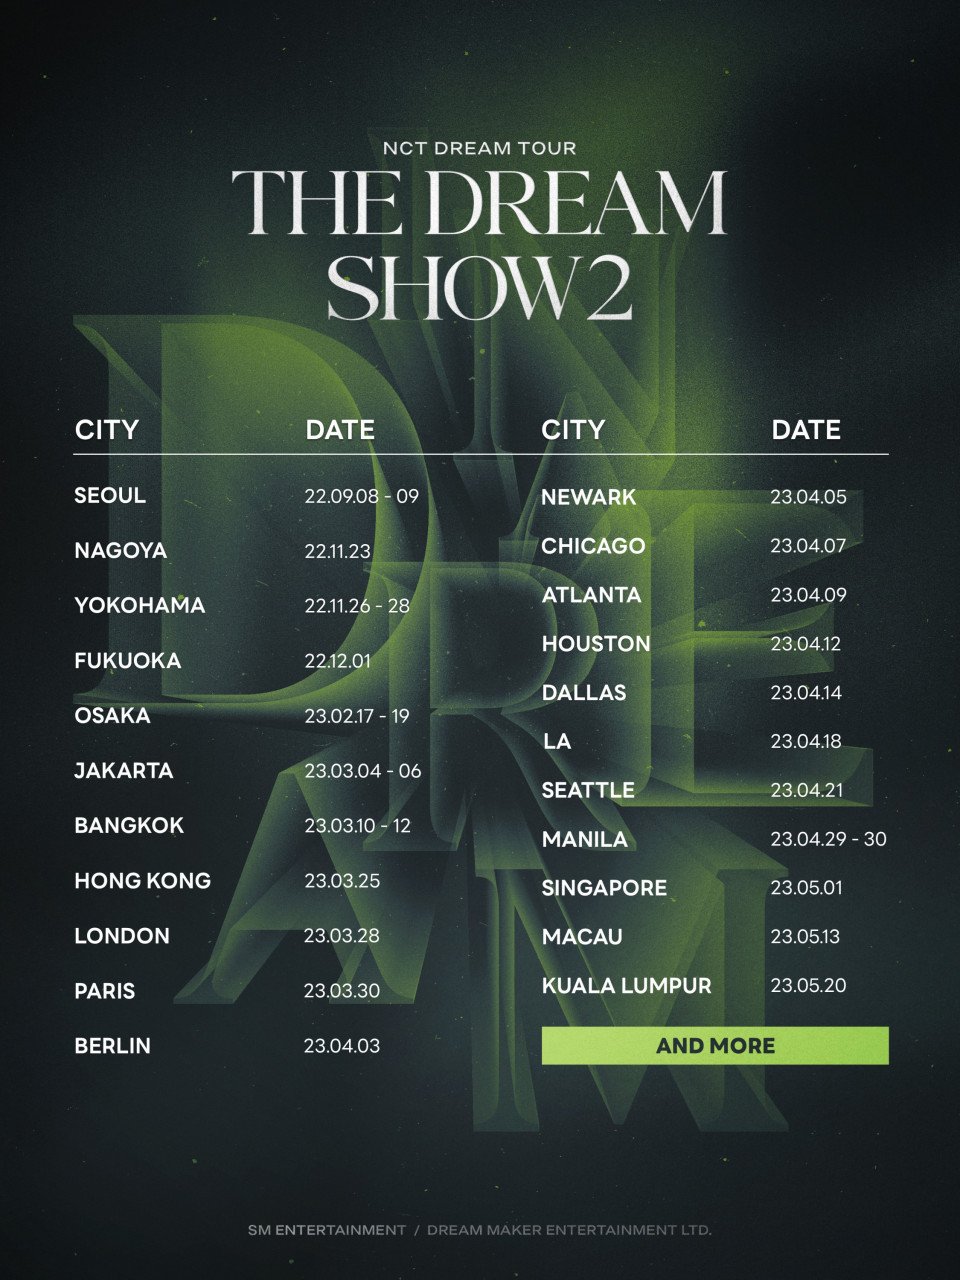 Senarai konsert NCT DREAM pada tahun ini.